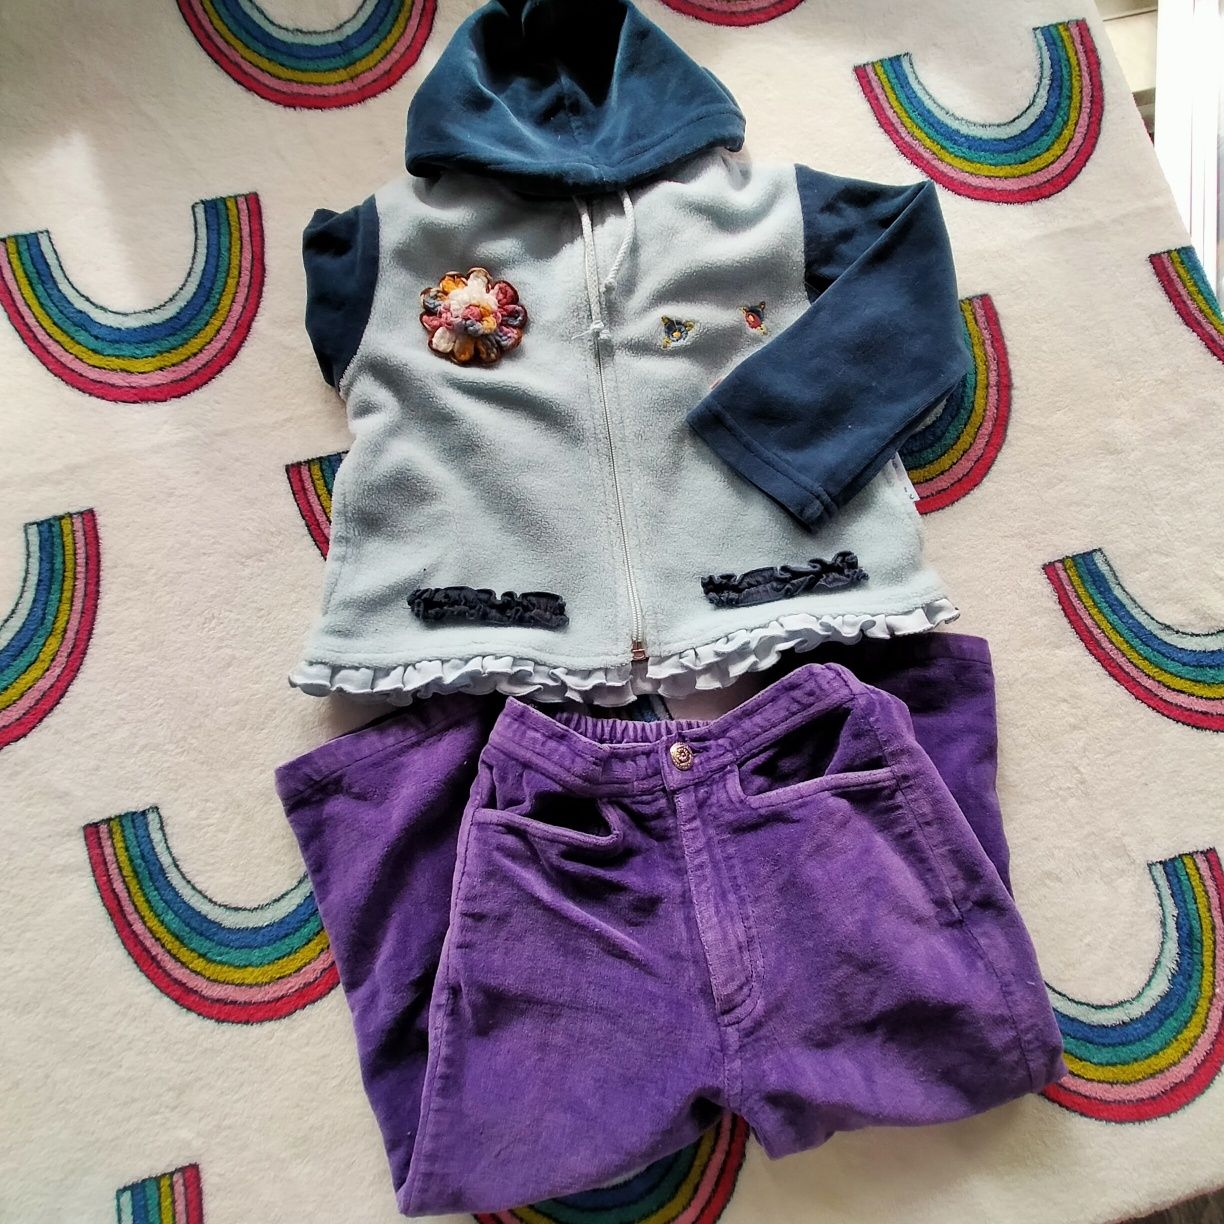 Rozpinana bluza z kapturem Baby by Wójcik, 92 cm, 2/3 lata.